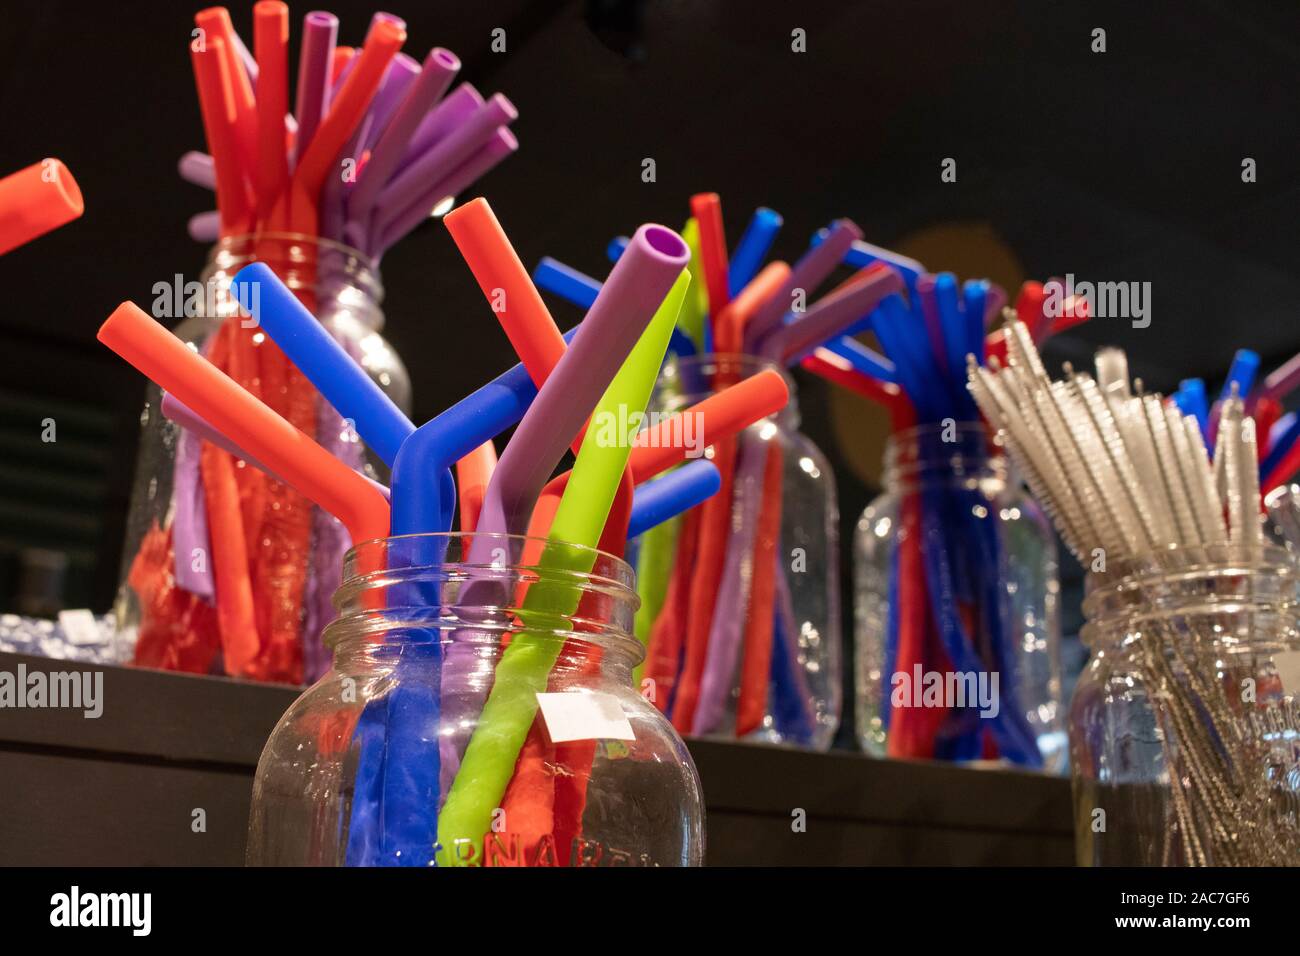 Multicolor riutilizzabili in silicone cannucce e spazzole clearning display in vasetti di vetro, rifiuti zero shop, sostenibile illecite Foto Stock